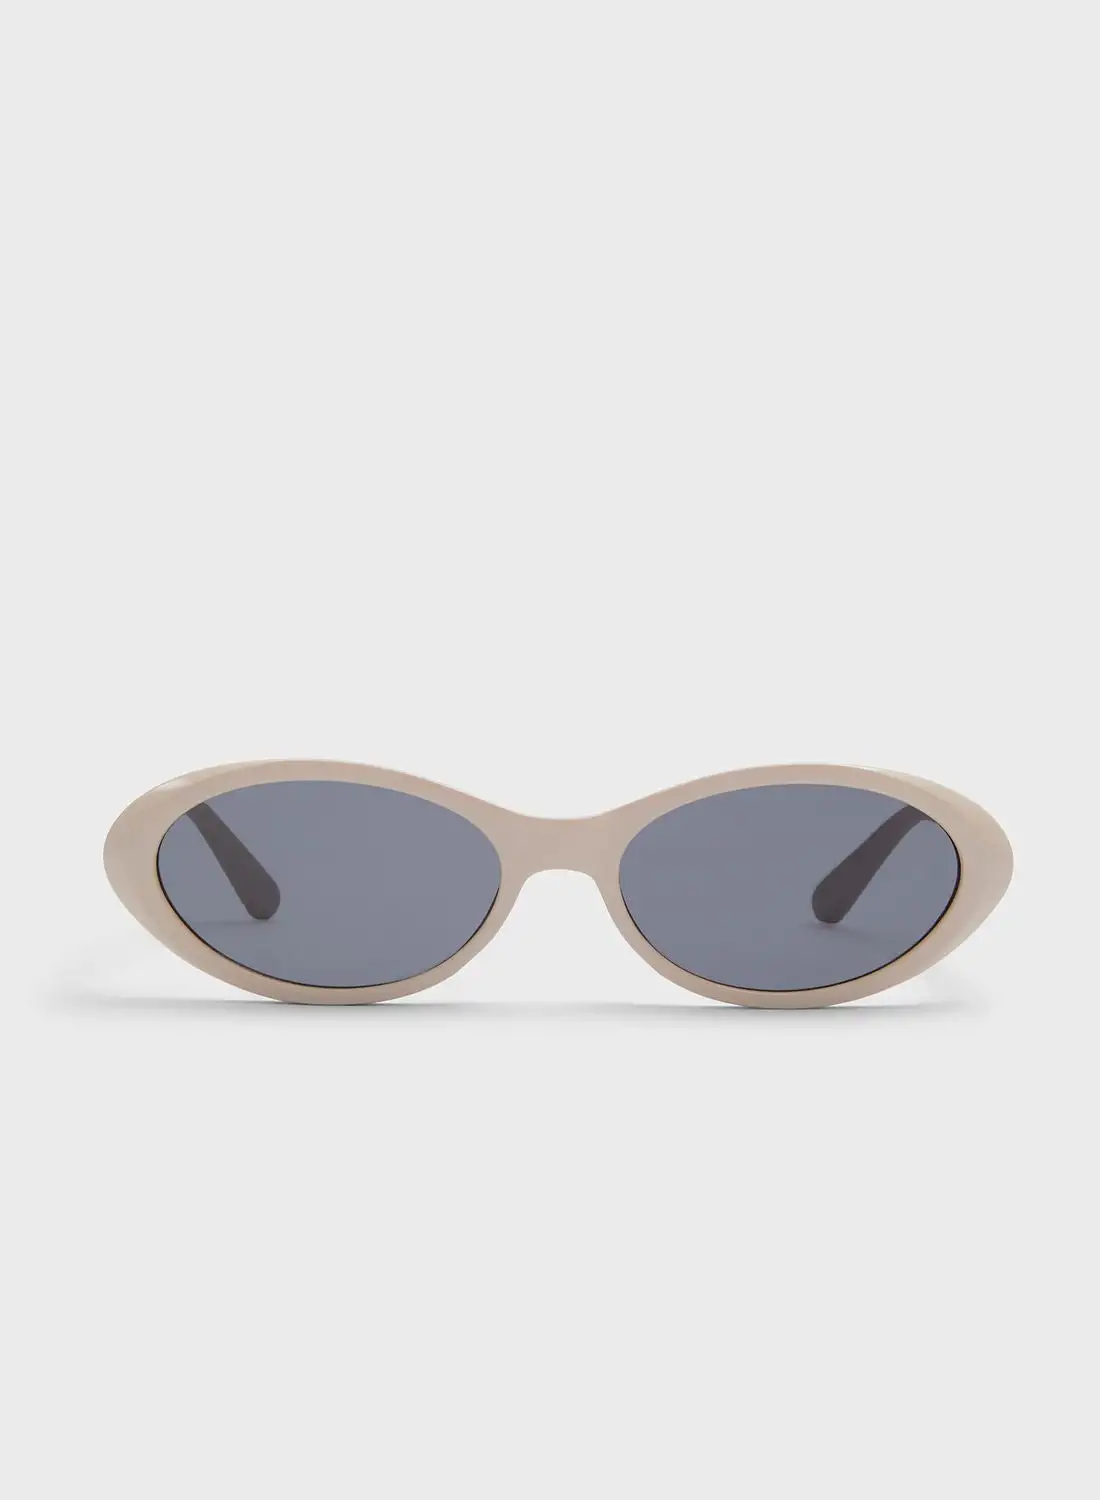 ALDO Sireene Sunglasses